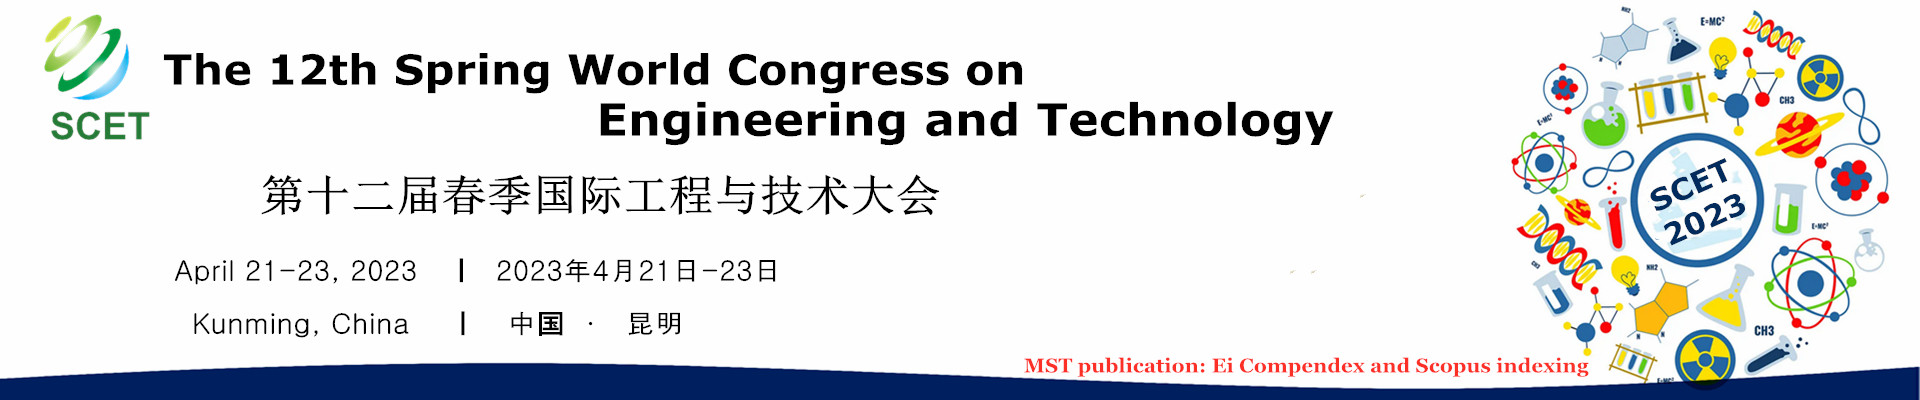 第十二届春季国际工程与技术大会 (SCET 2023)